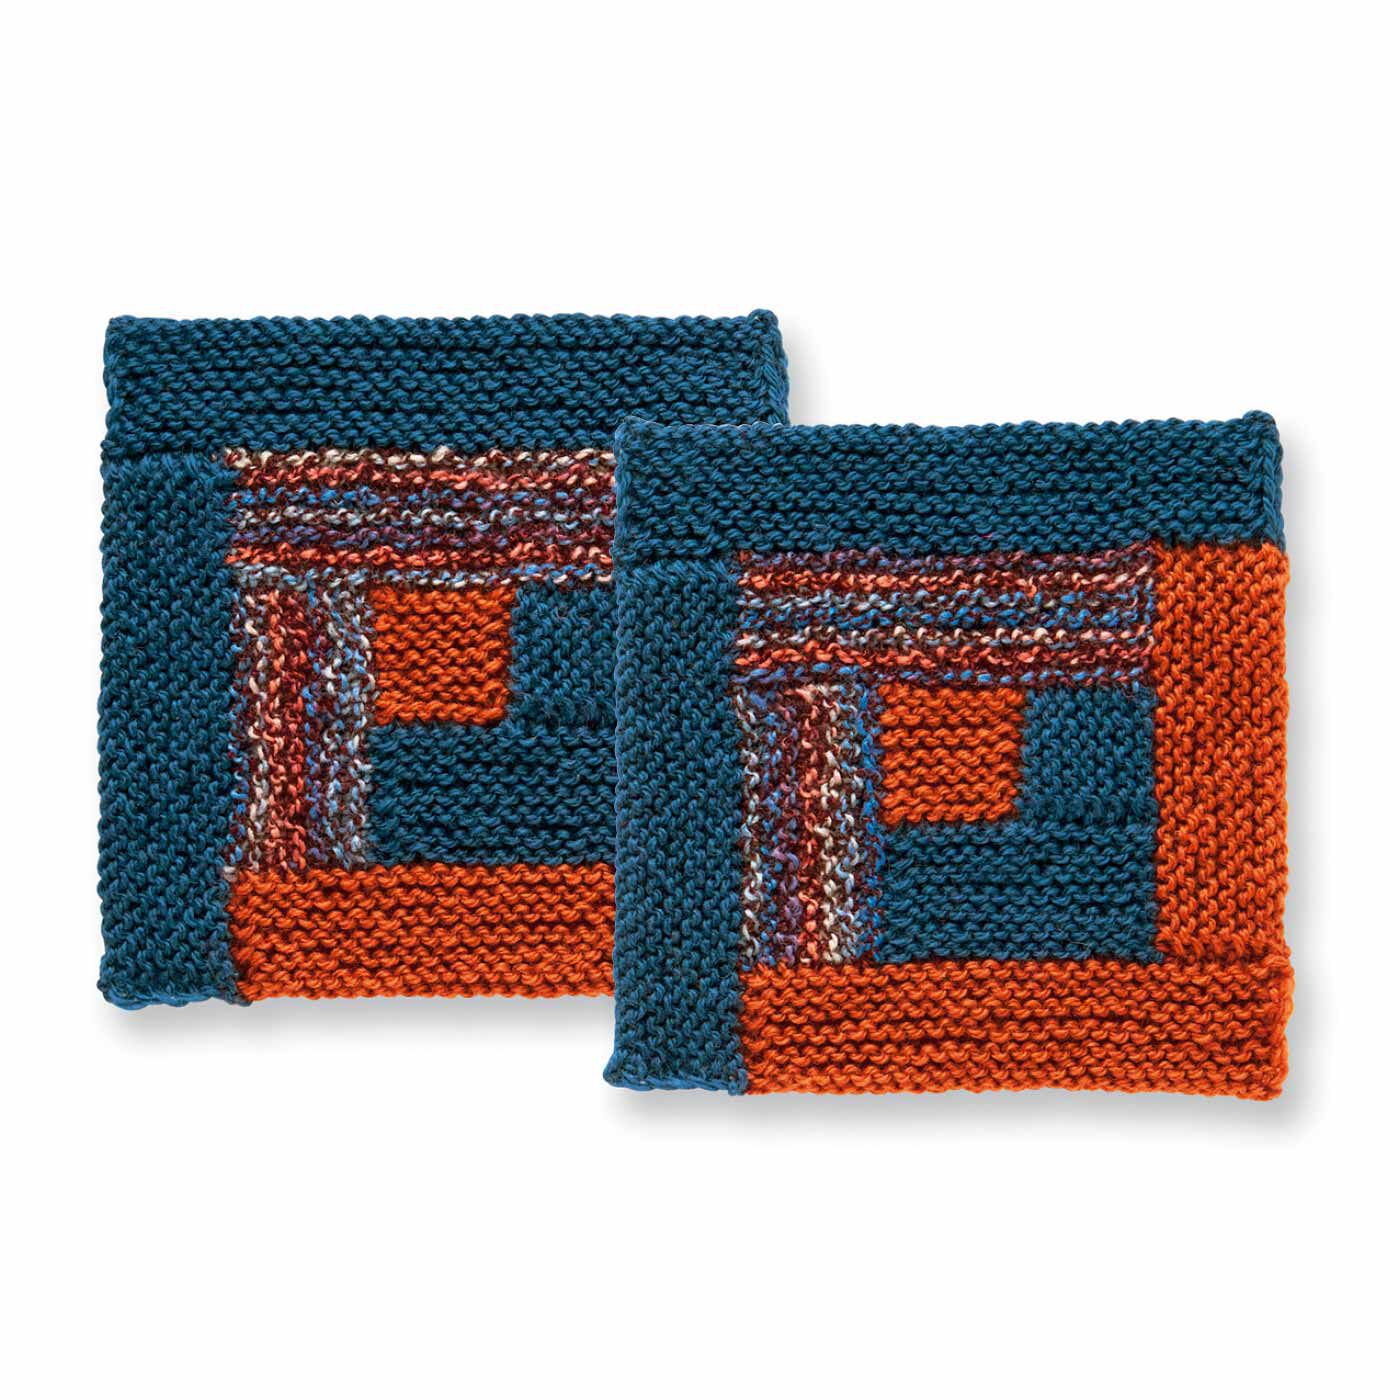 Couturier|棒針編みの沼にはまる ユニーク編み地のサンプラーの会|ログキャビン風のカラーブロック